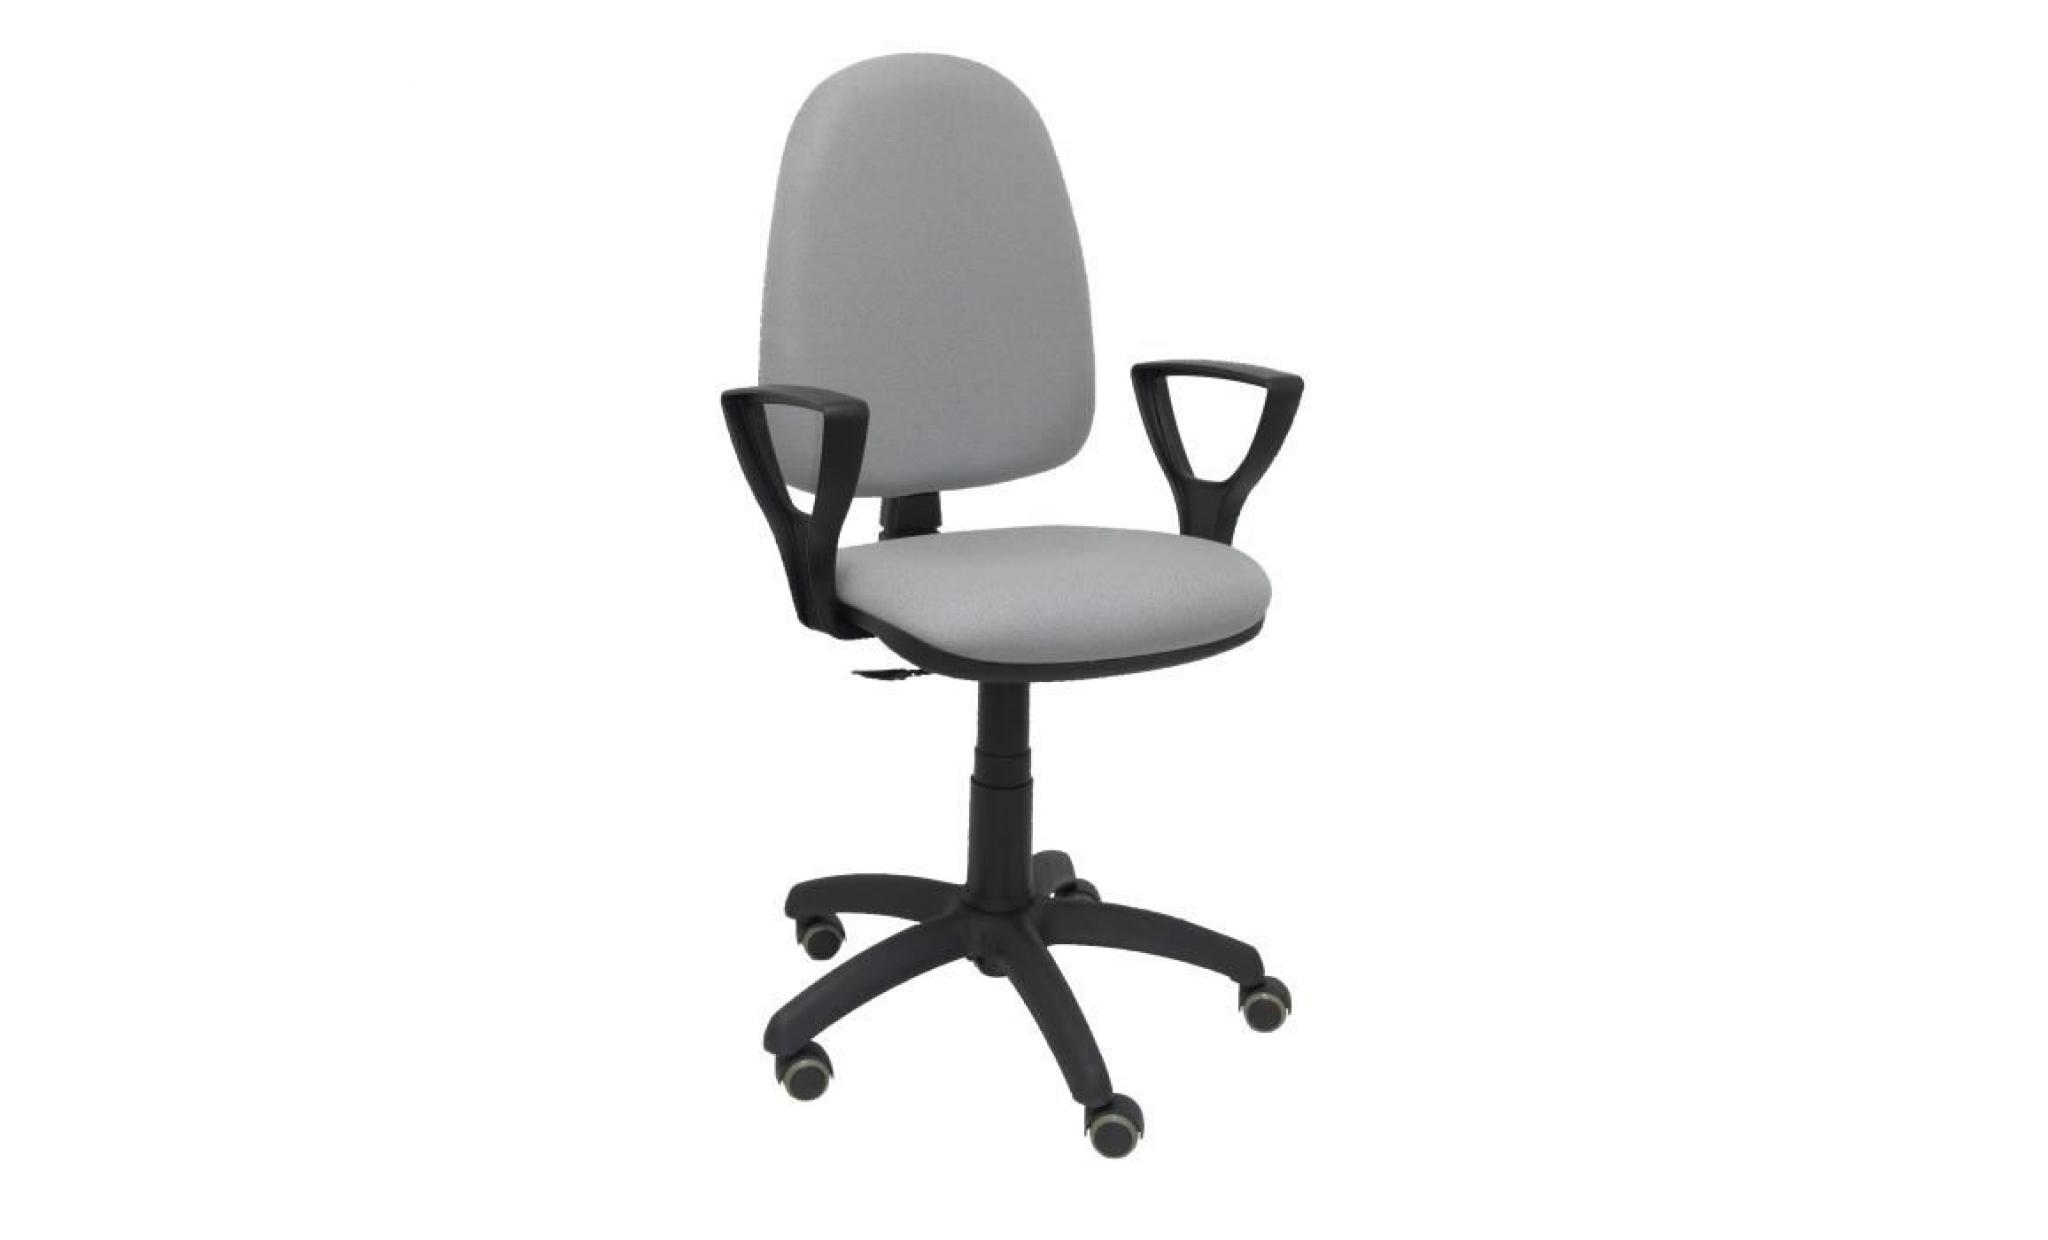 modèle 04cpbali40bgolfrp chaise de bureau ergonomique avec mécanisme de contact permanent, réglable en hauteur et roues de parquet pas cher